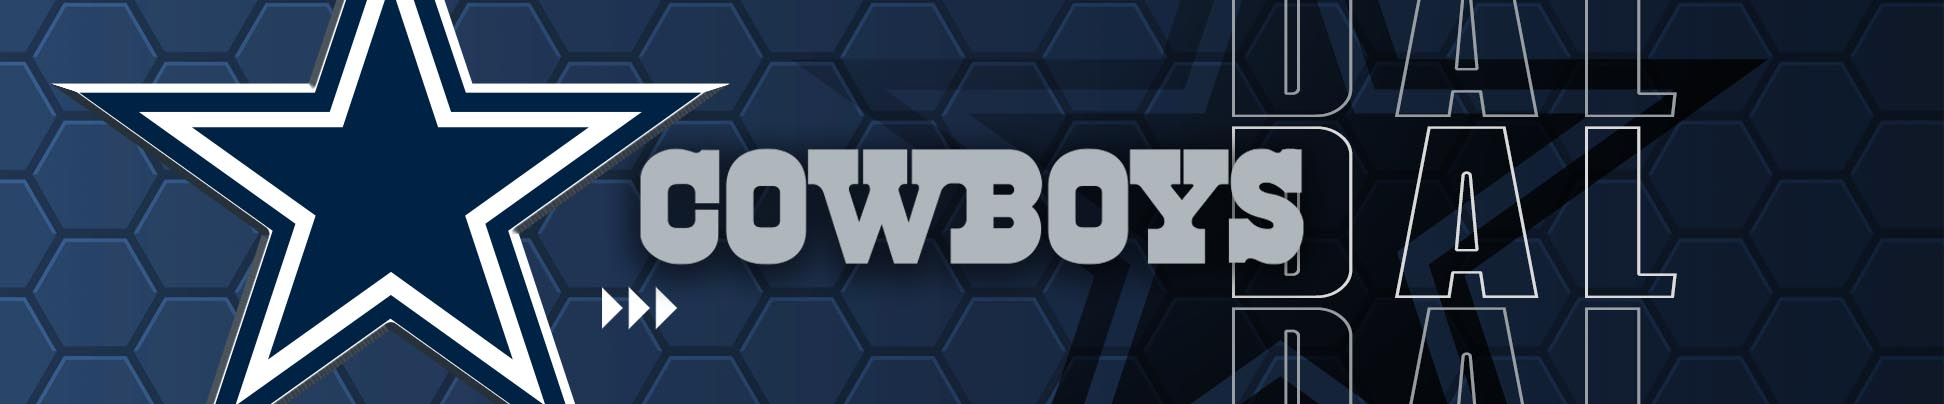 Dallas Cowboys Memorabilia & Collectibles